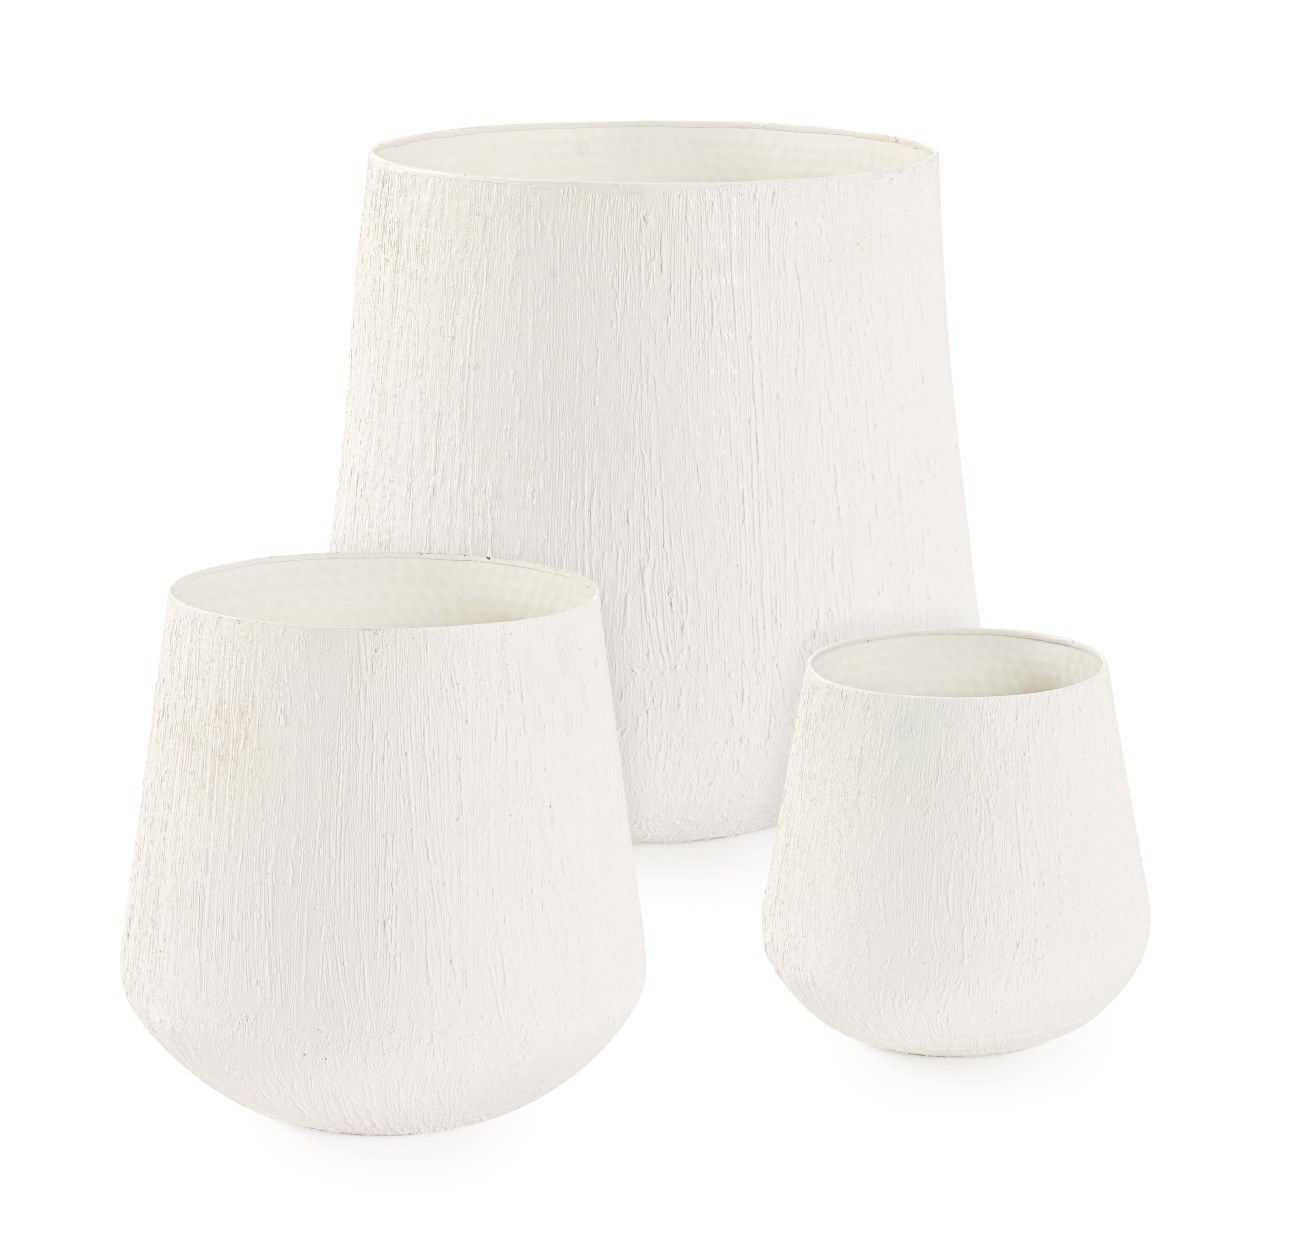 Die Outdoor Vase Kenar überzeugt mit ihrem modernen Design. Gefertigt wurde sie aus Metall, welches einen weißen Farbton besitzt. Die Vase besteht aus einem 3er Set in unterschiedlichen Größen.